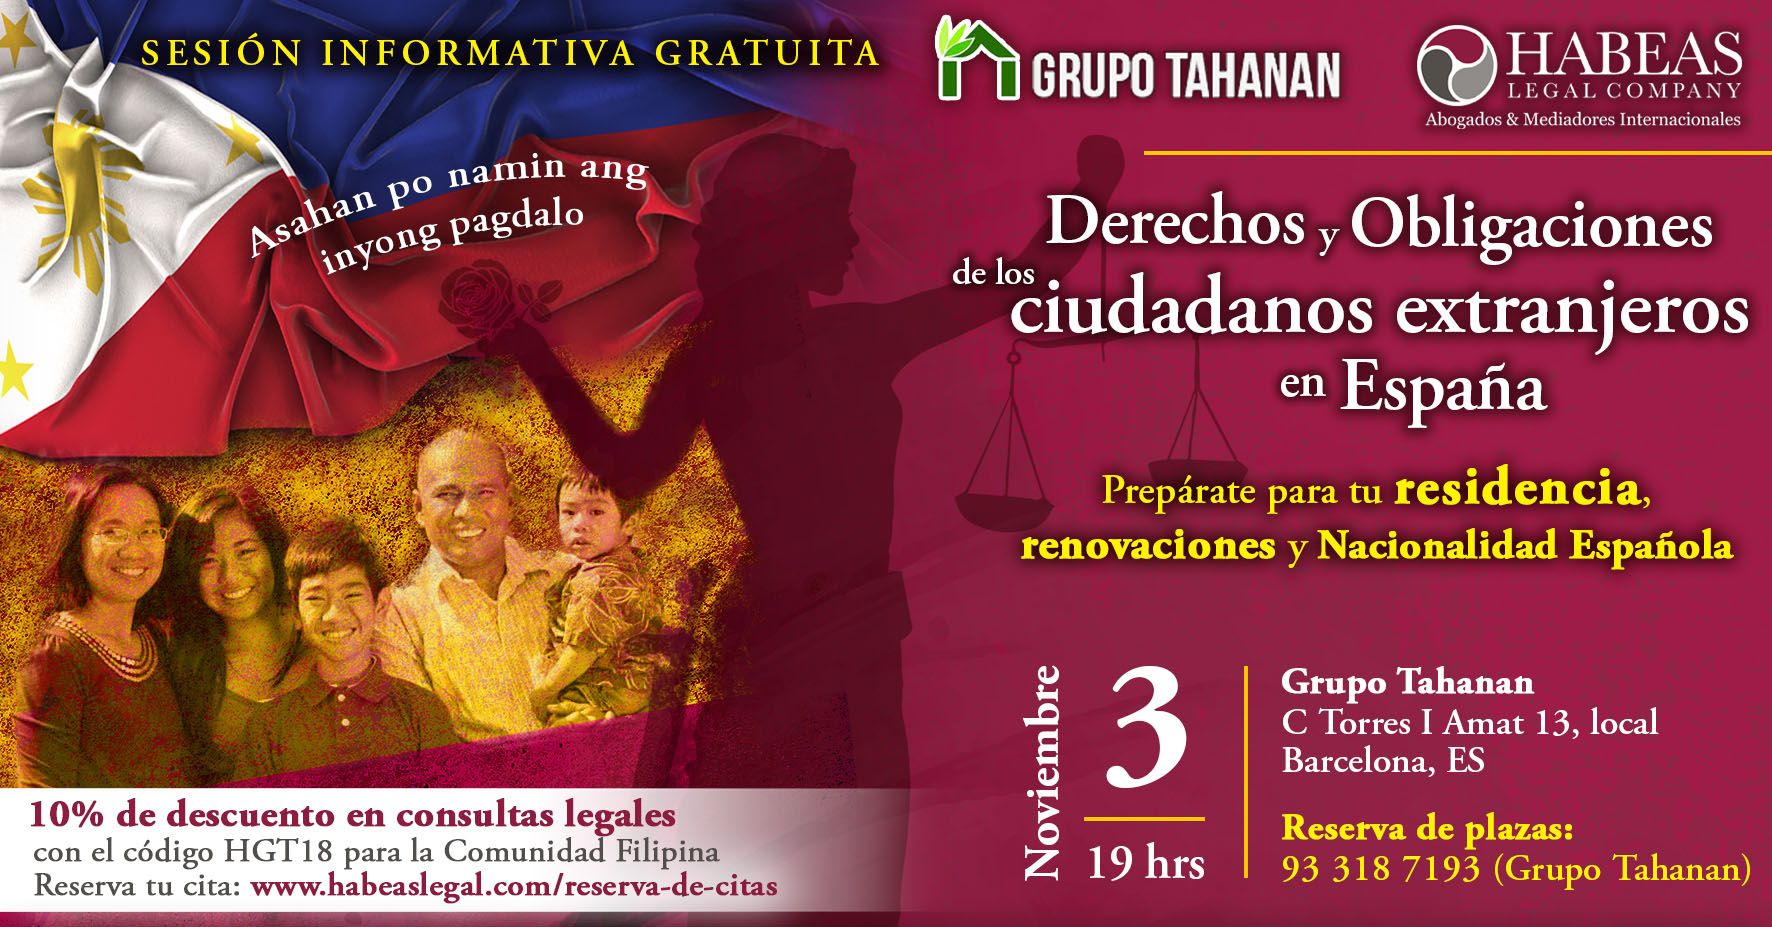 DyO Extranjeros Tahanan FB 2 - "Los Derechos y Obligaciones de los ciudadanos extranjeros en España" - sesión informativa gratuita